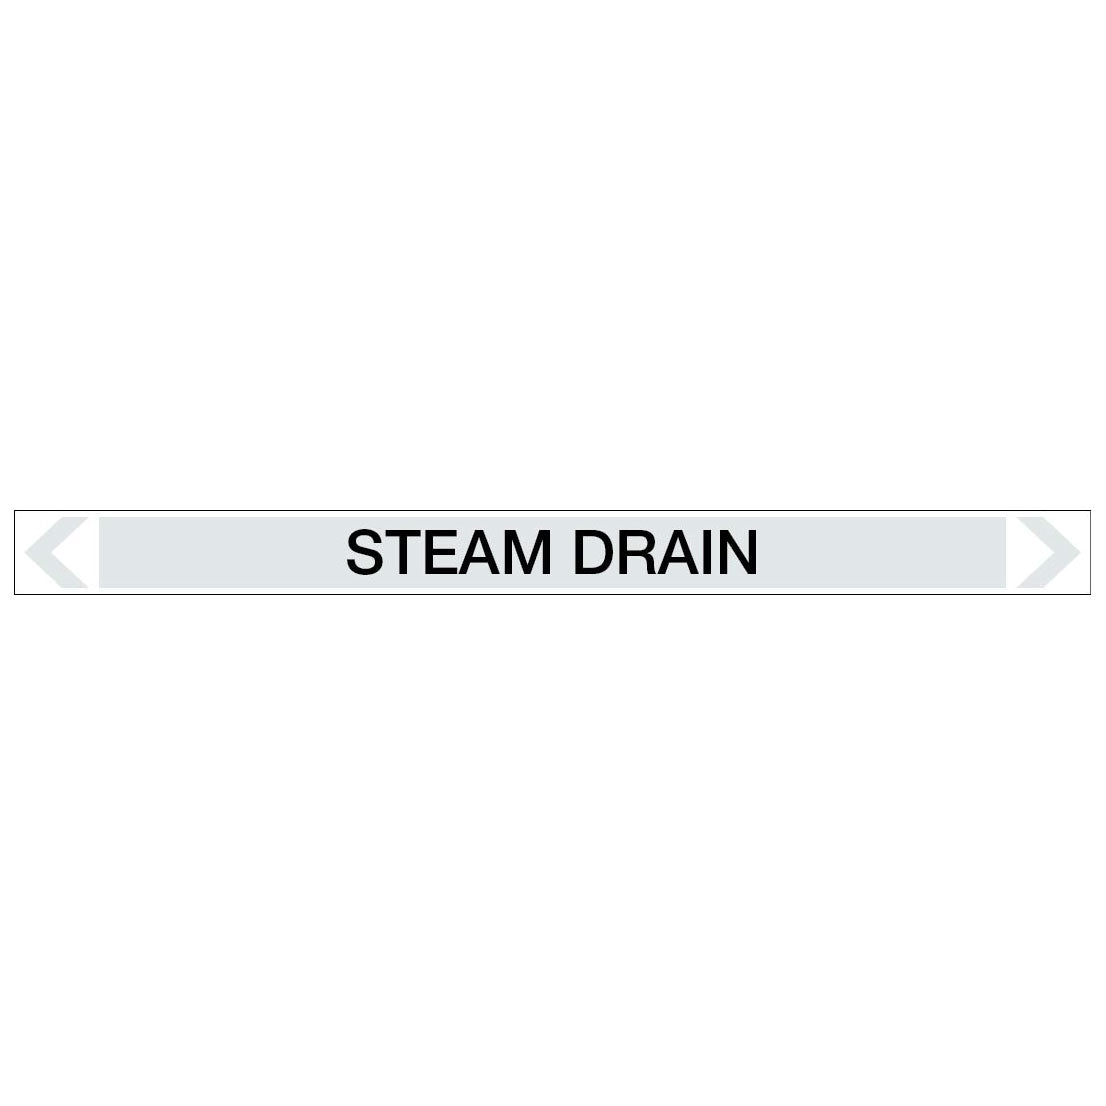 Steam - Steam Drain - Pipe Marker Sticker